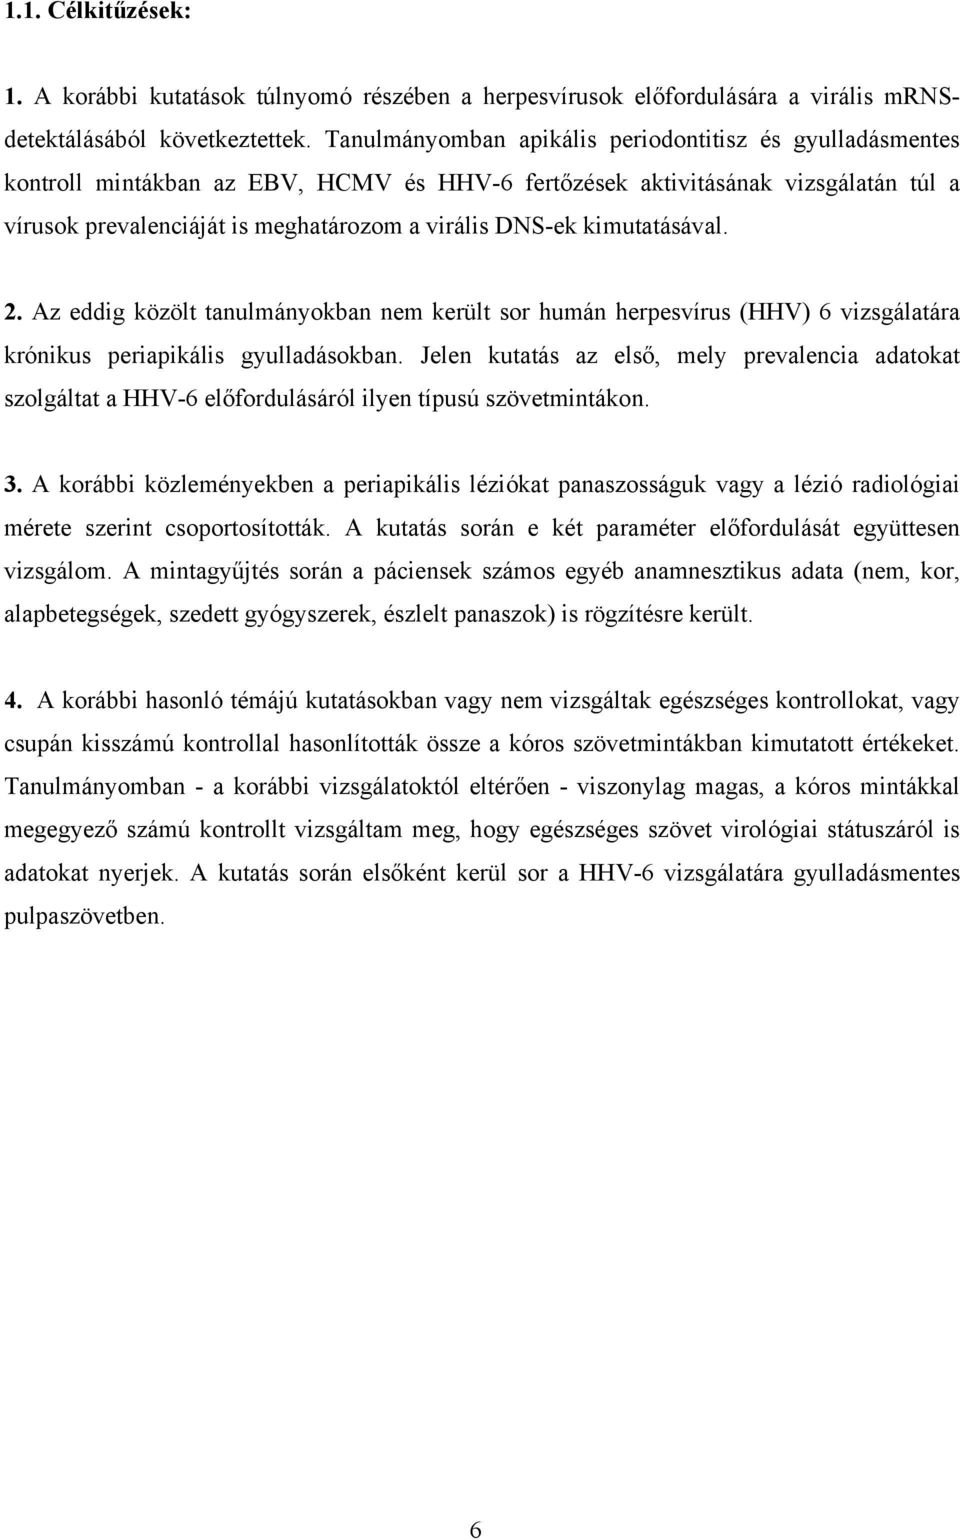 kimutatásával. 2. Az eddig közölt tanulmányokban nem került sor humán herpesvírus (HHV) 6 vizsgálatára krónikus periapikális gyulladásokban.